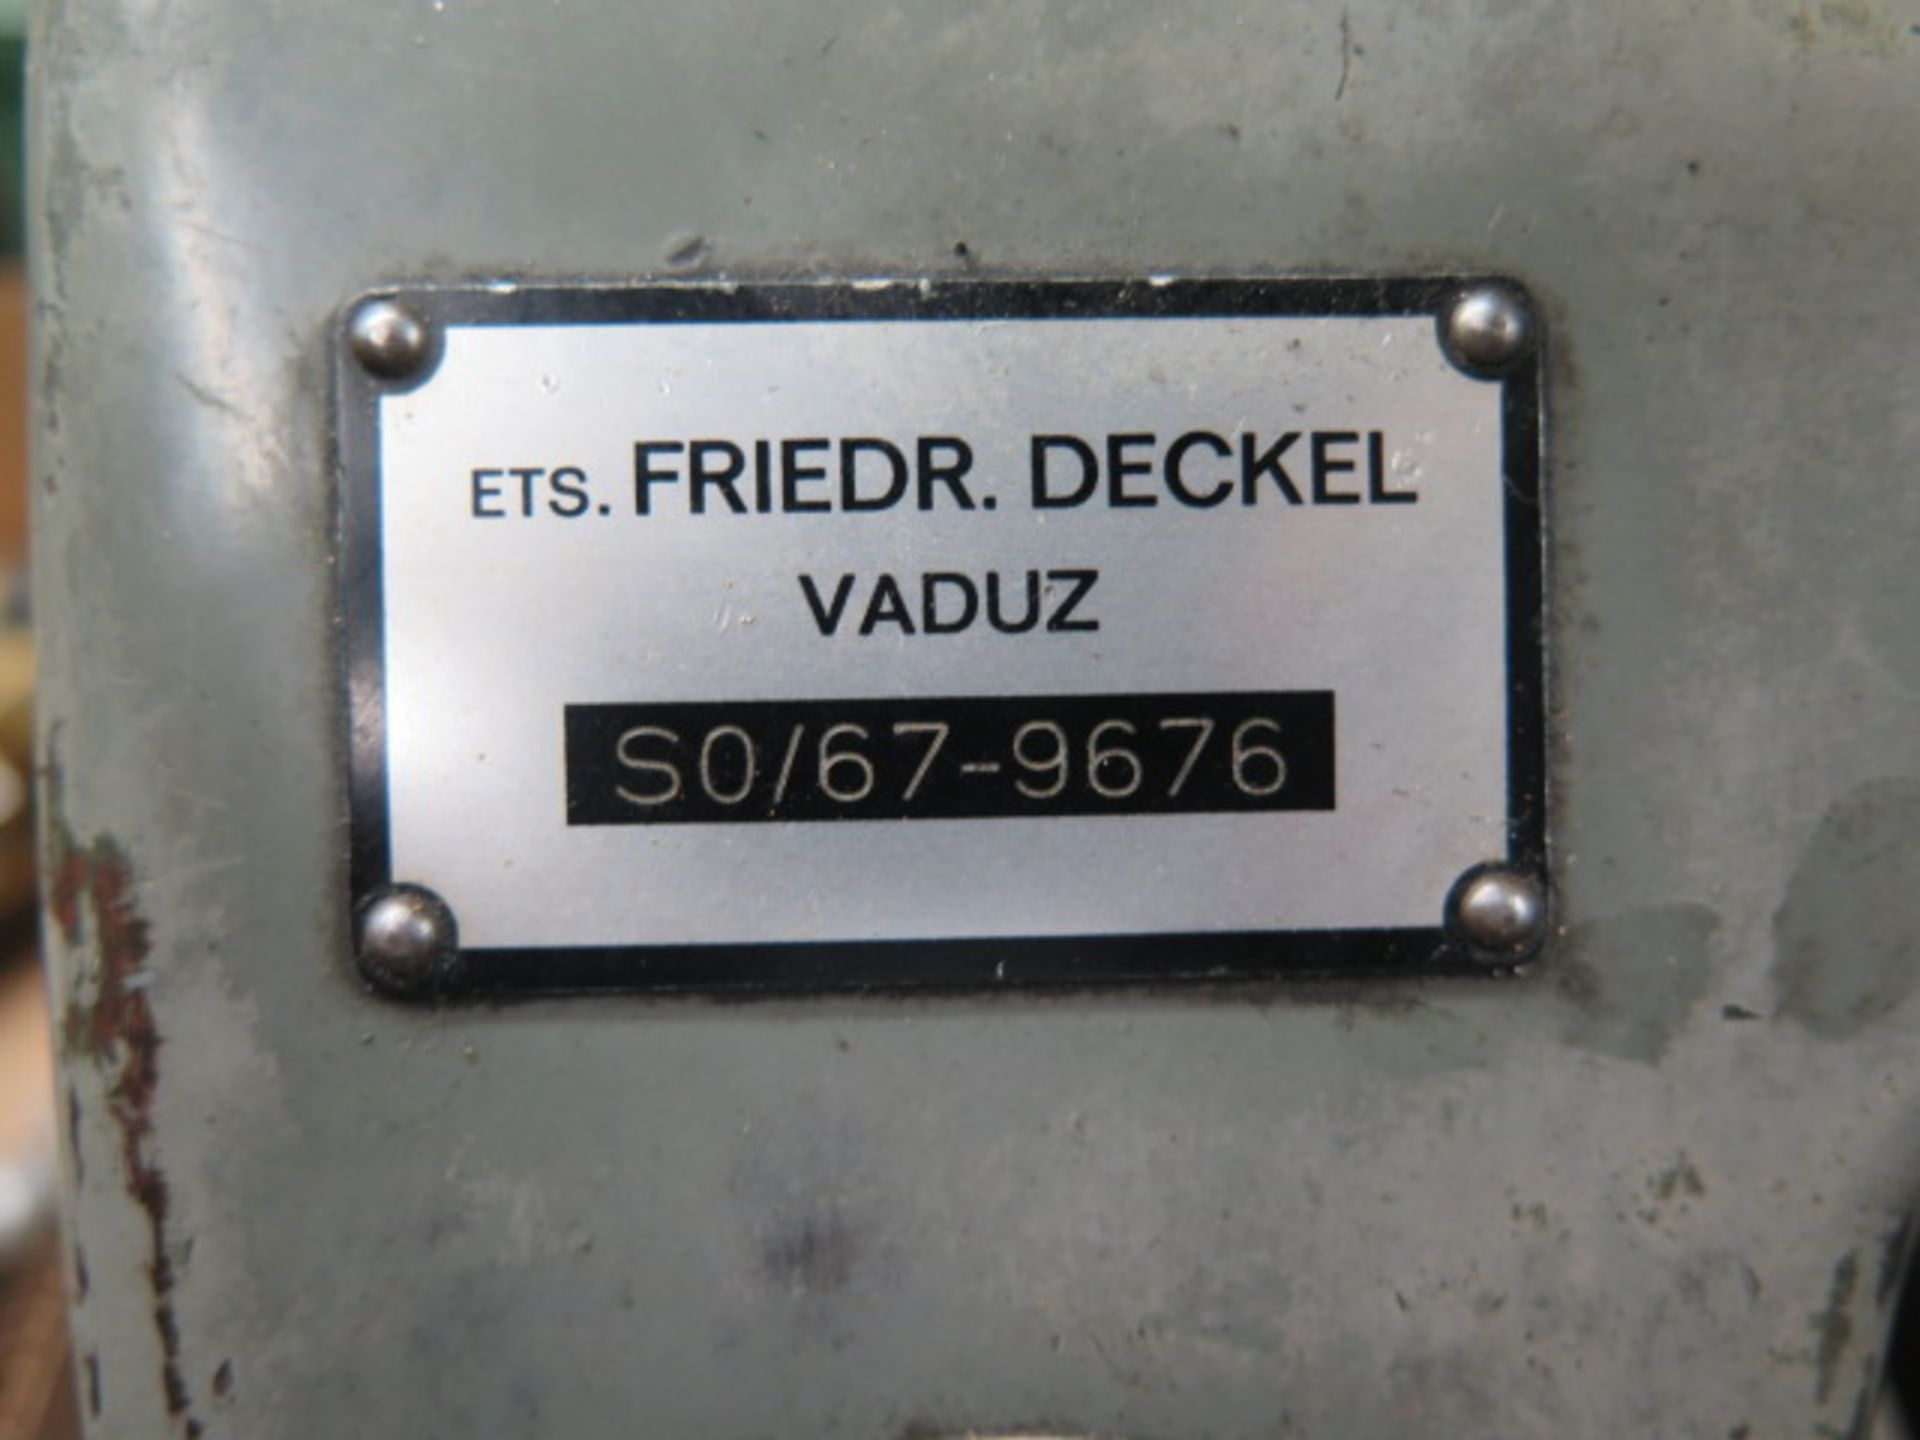 Deckel SO Single-Lip Tool Grinder s/n SO/67-9676 - Image 5 of 5